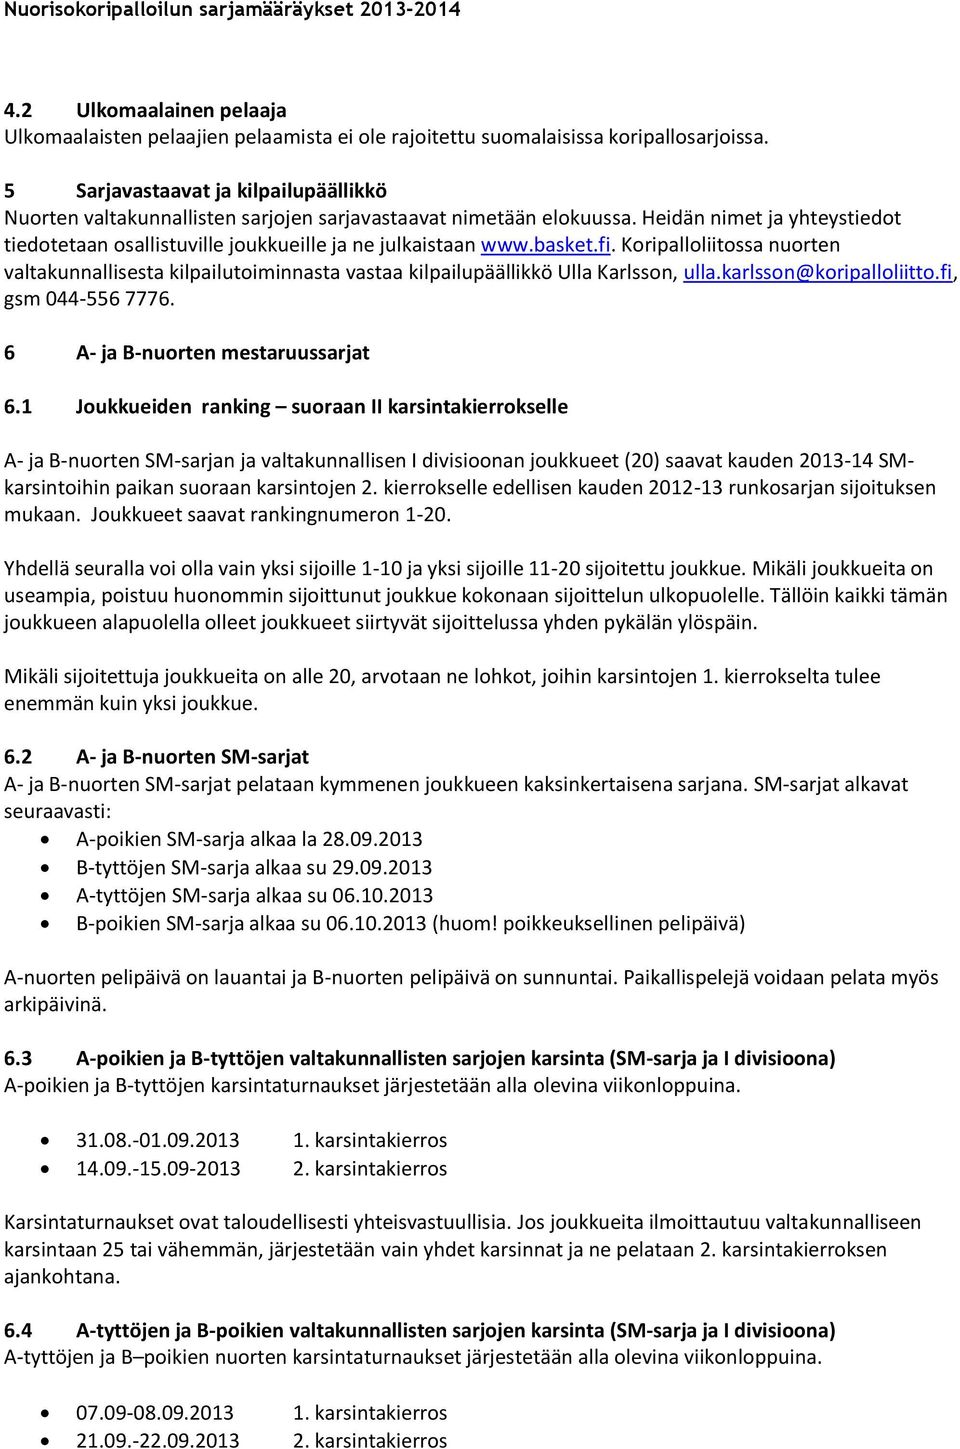 basket.fi. Koripalloliitossa nuorten valtakunnallisesta kilpailutoiminnasta vastaa kilpailupäällikkö Ulla Karlsson, ulla.karlsson@koripalloliitto.fi, gsm 044-556 7776.